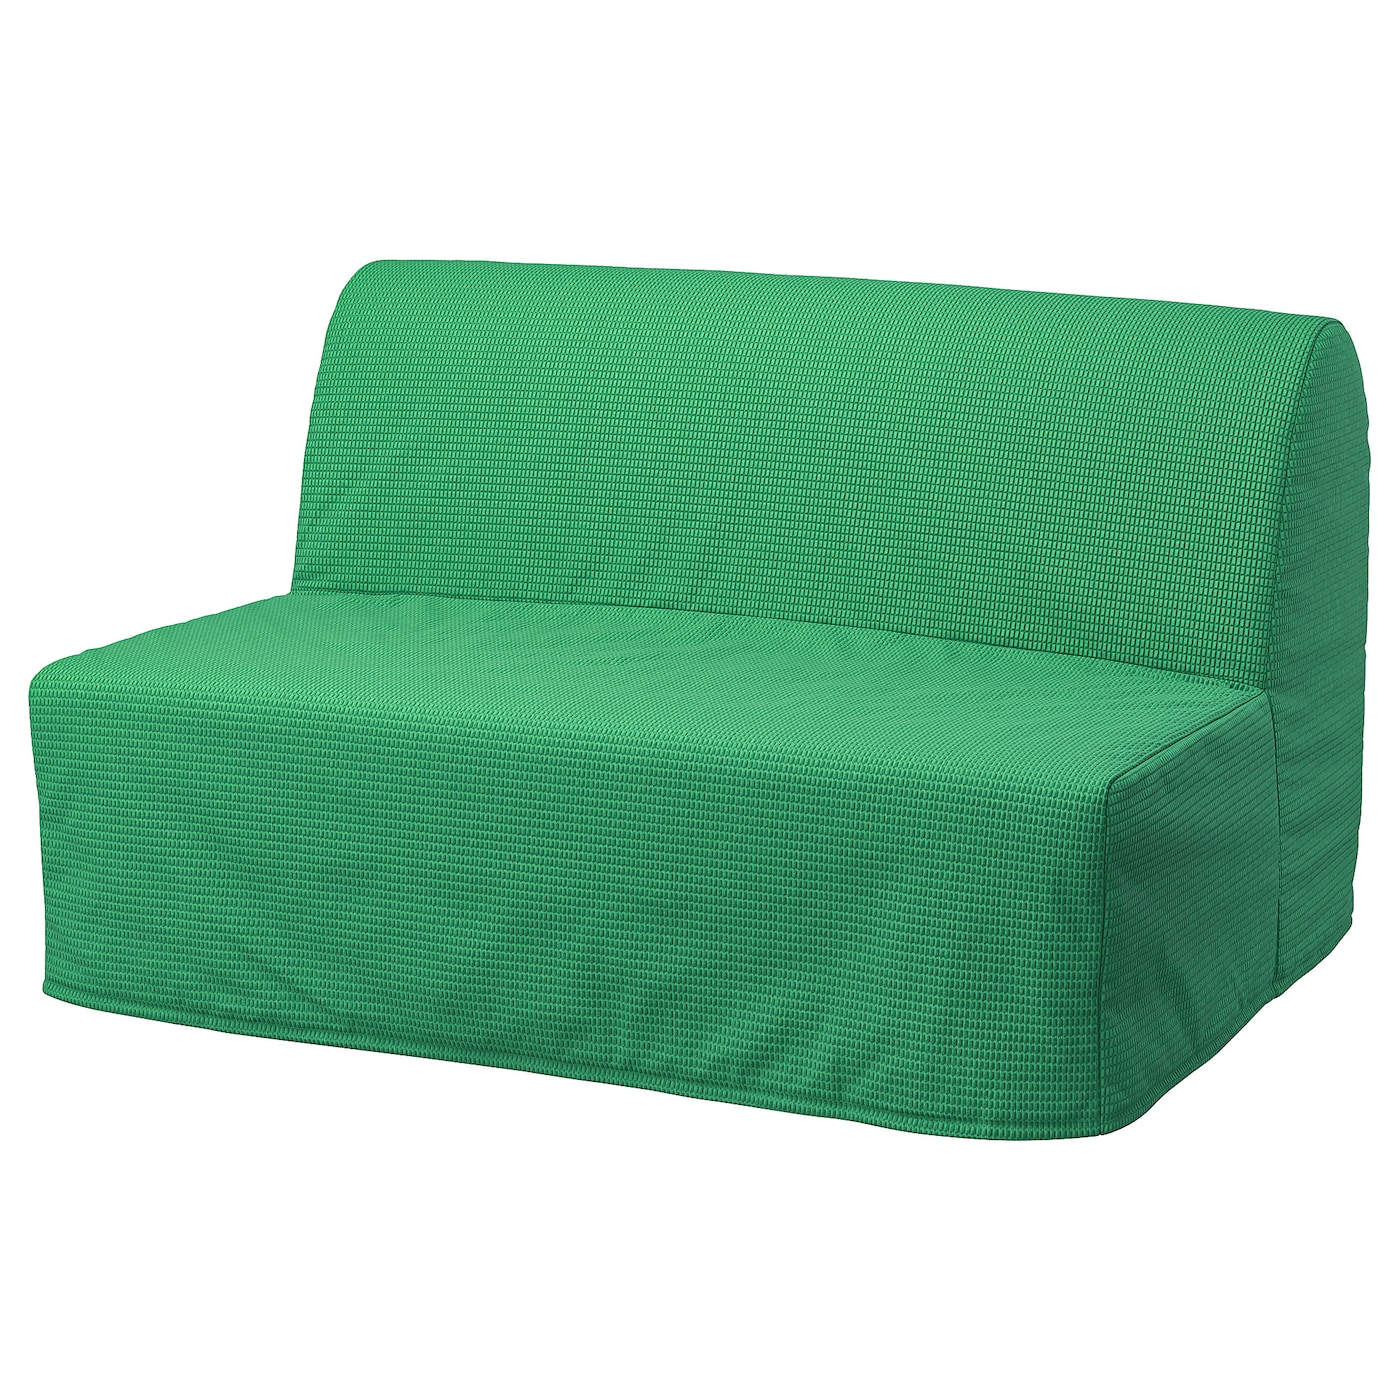 ЛИКСЕЛЕ ЛЁВОС 2 раскладных дивана-кровати, Вансбро ярко-зеленый LYCKSELE LÖVÅS IKEA чехол на подушку для дивана эластичное украшение для дома однотонный защитный чехол для дивана индивидуальный моющийся чехол для дивана